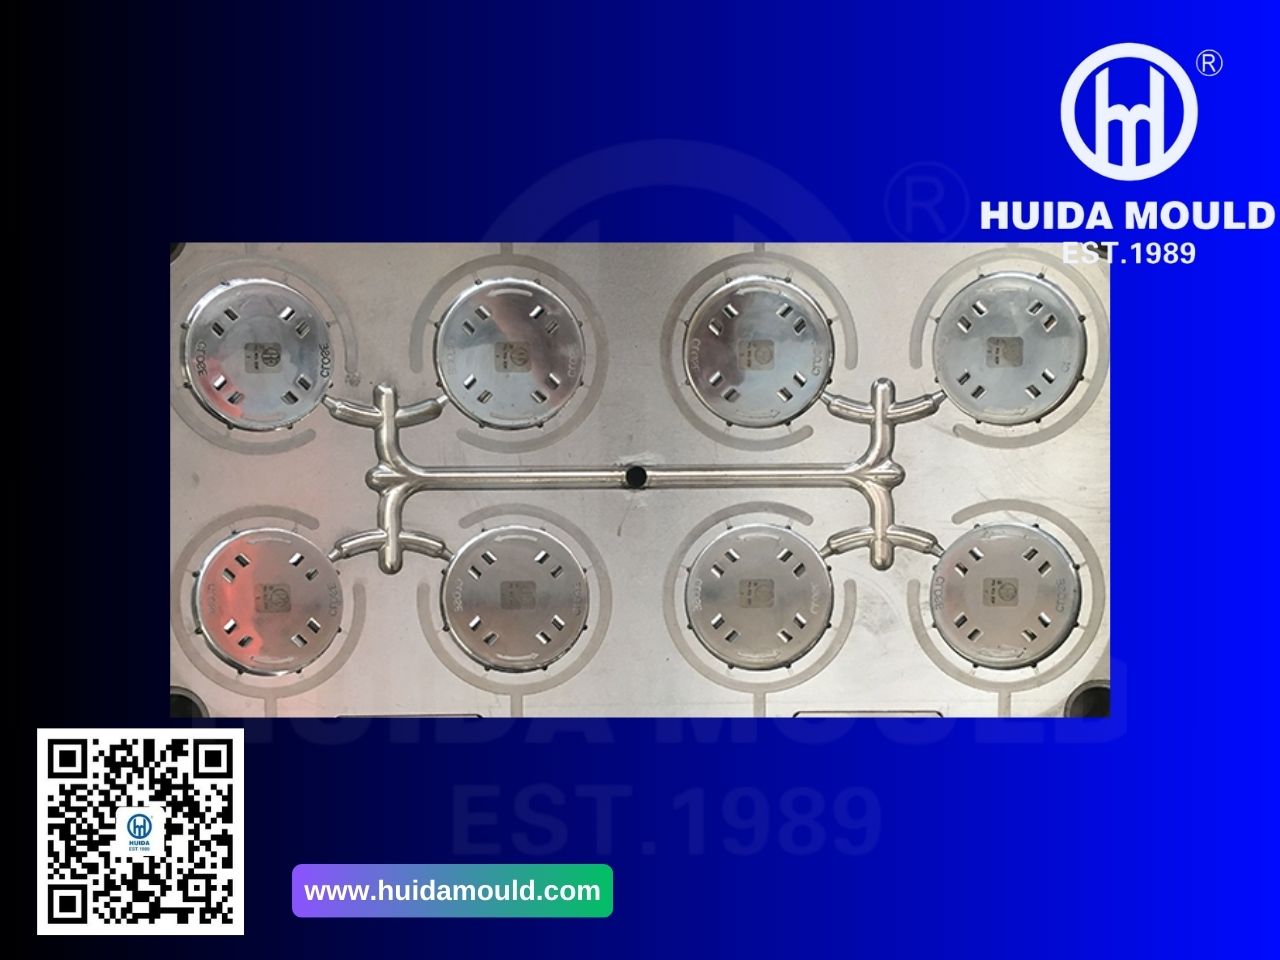 Productos destacados del sitio web de Huida 5